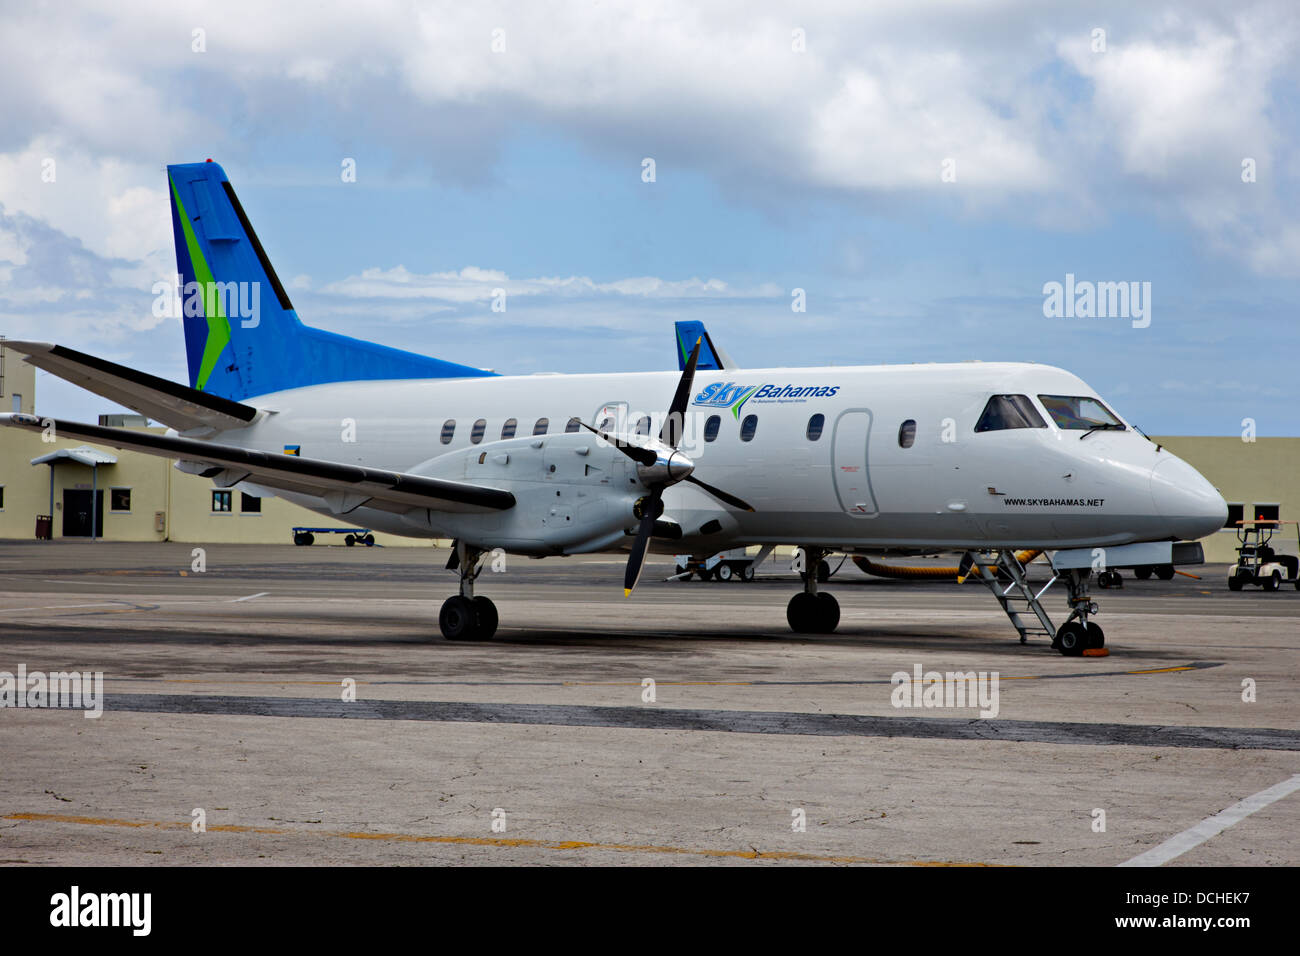 Sky Bahamas aereo, New Providence Island, Bahamas, dei Caraibi Foto Stock